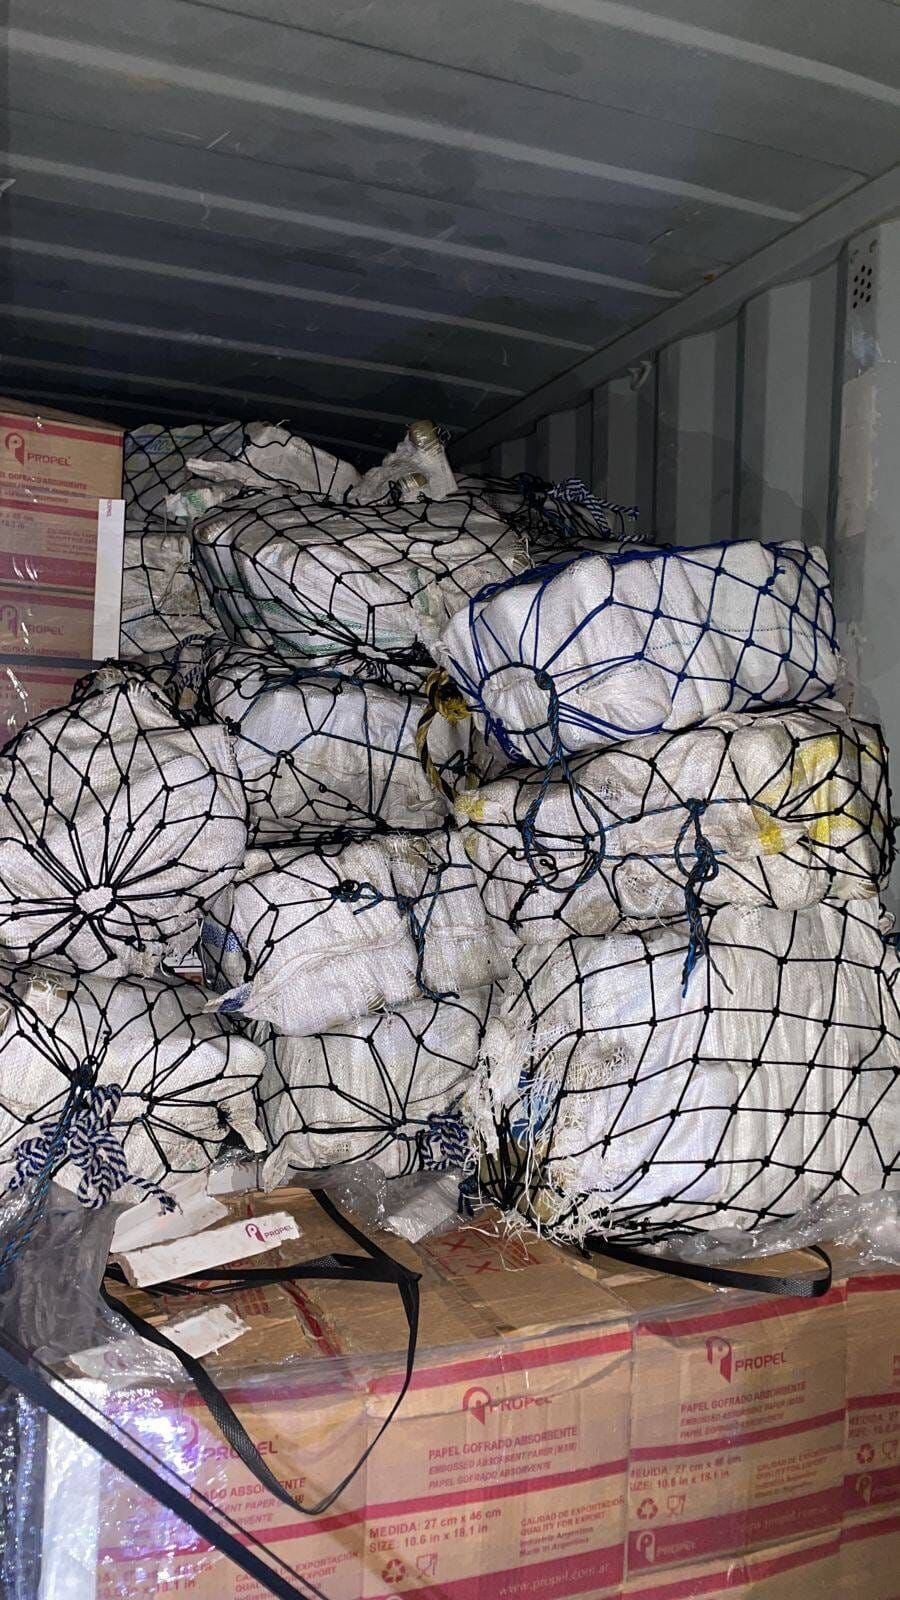 Descubren 459 kilos de cocaína en un contenedor que transportaba una embarcación en Cartagena